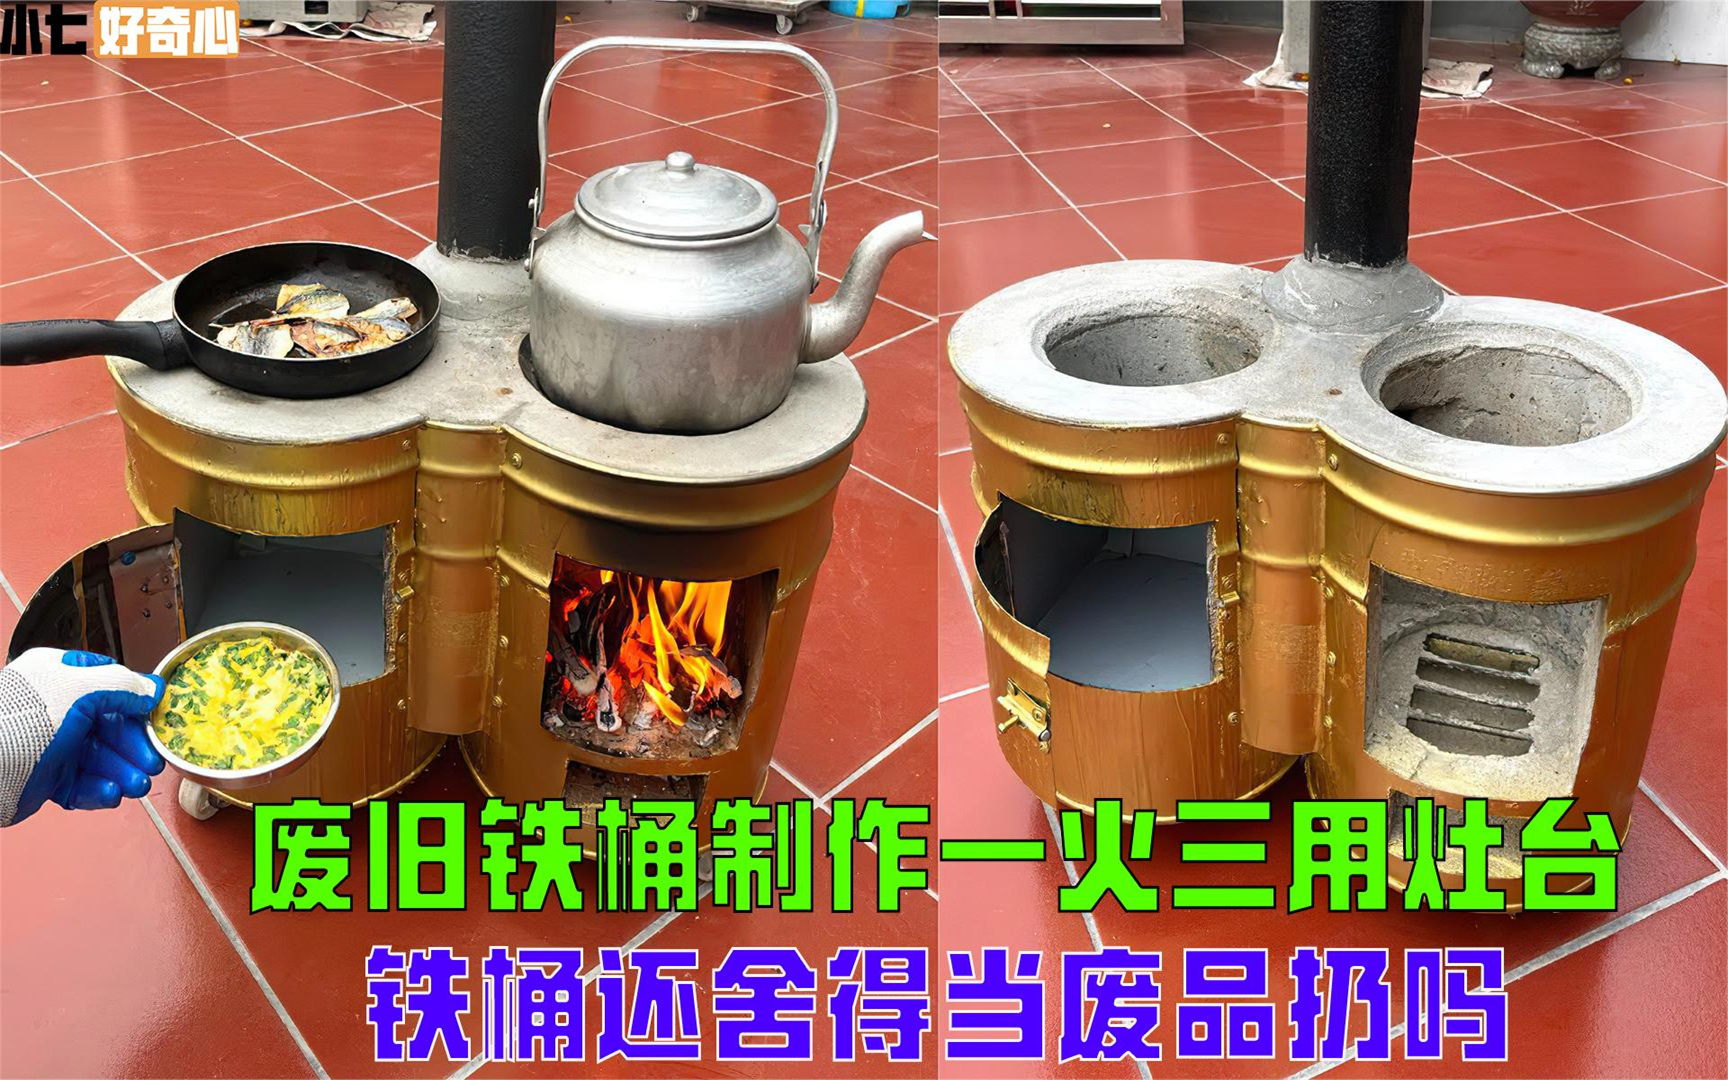 用废旧铁桶制作一火三用柴火灶,烧水做饭同时进行,创意堪称绝妙